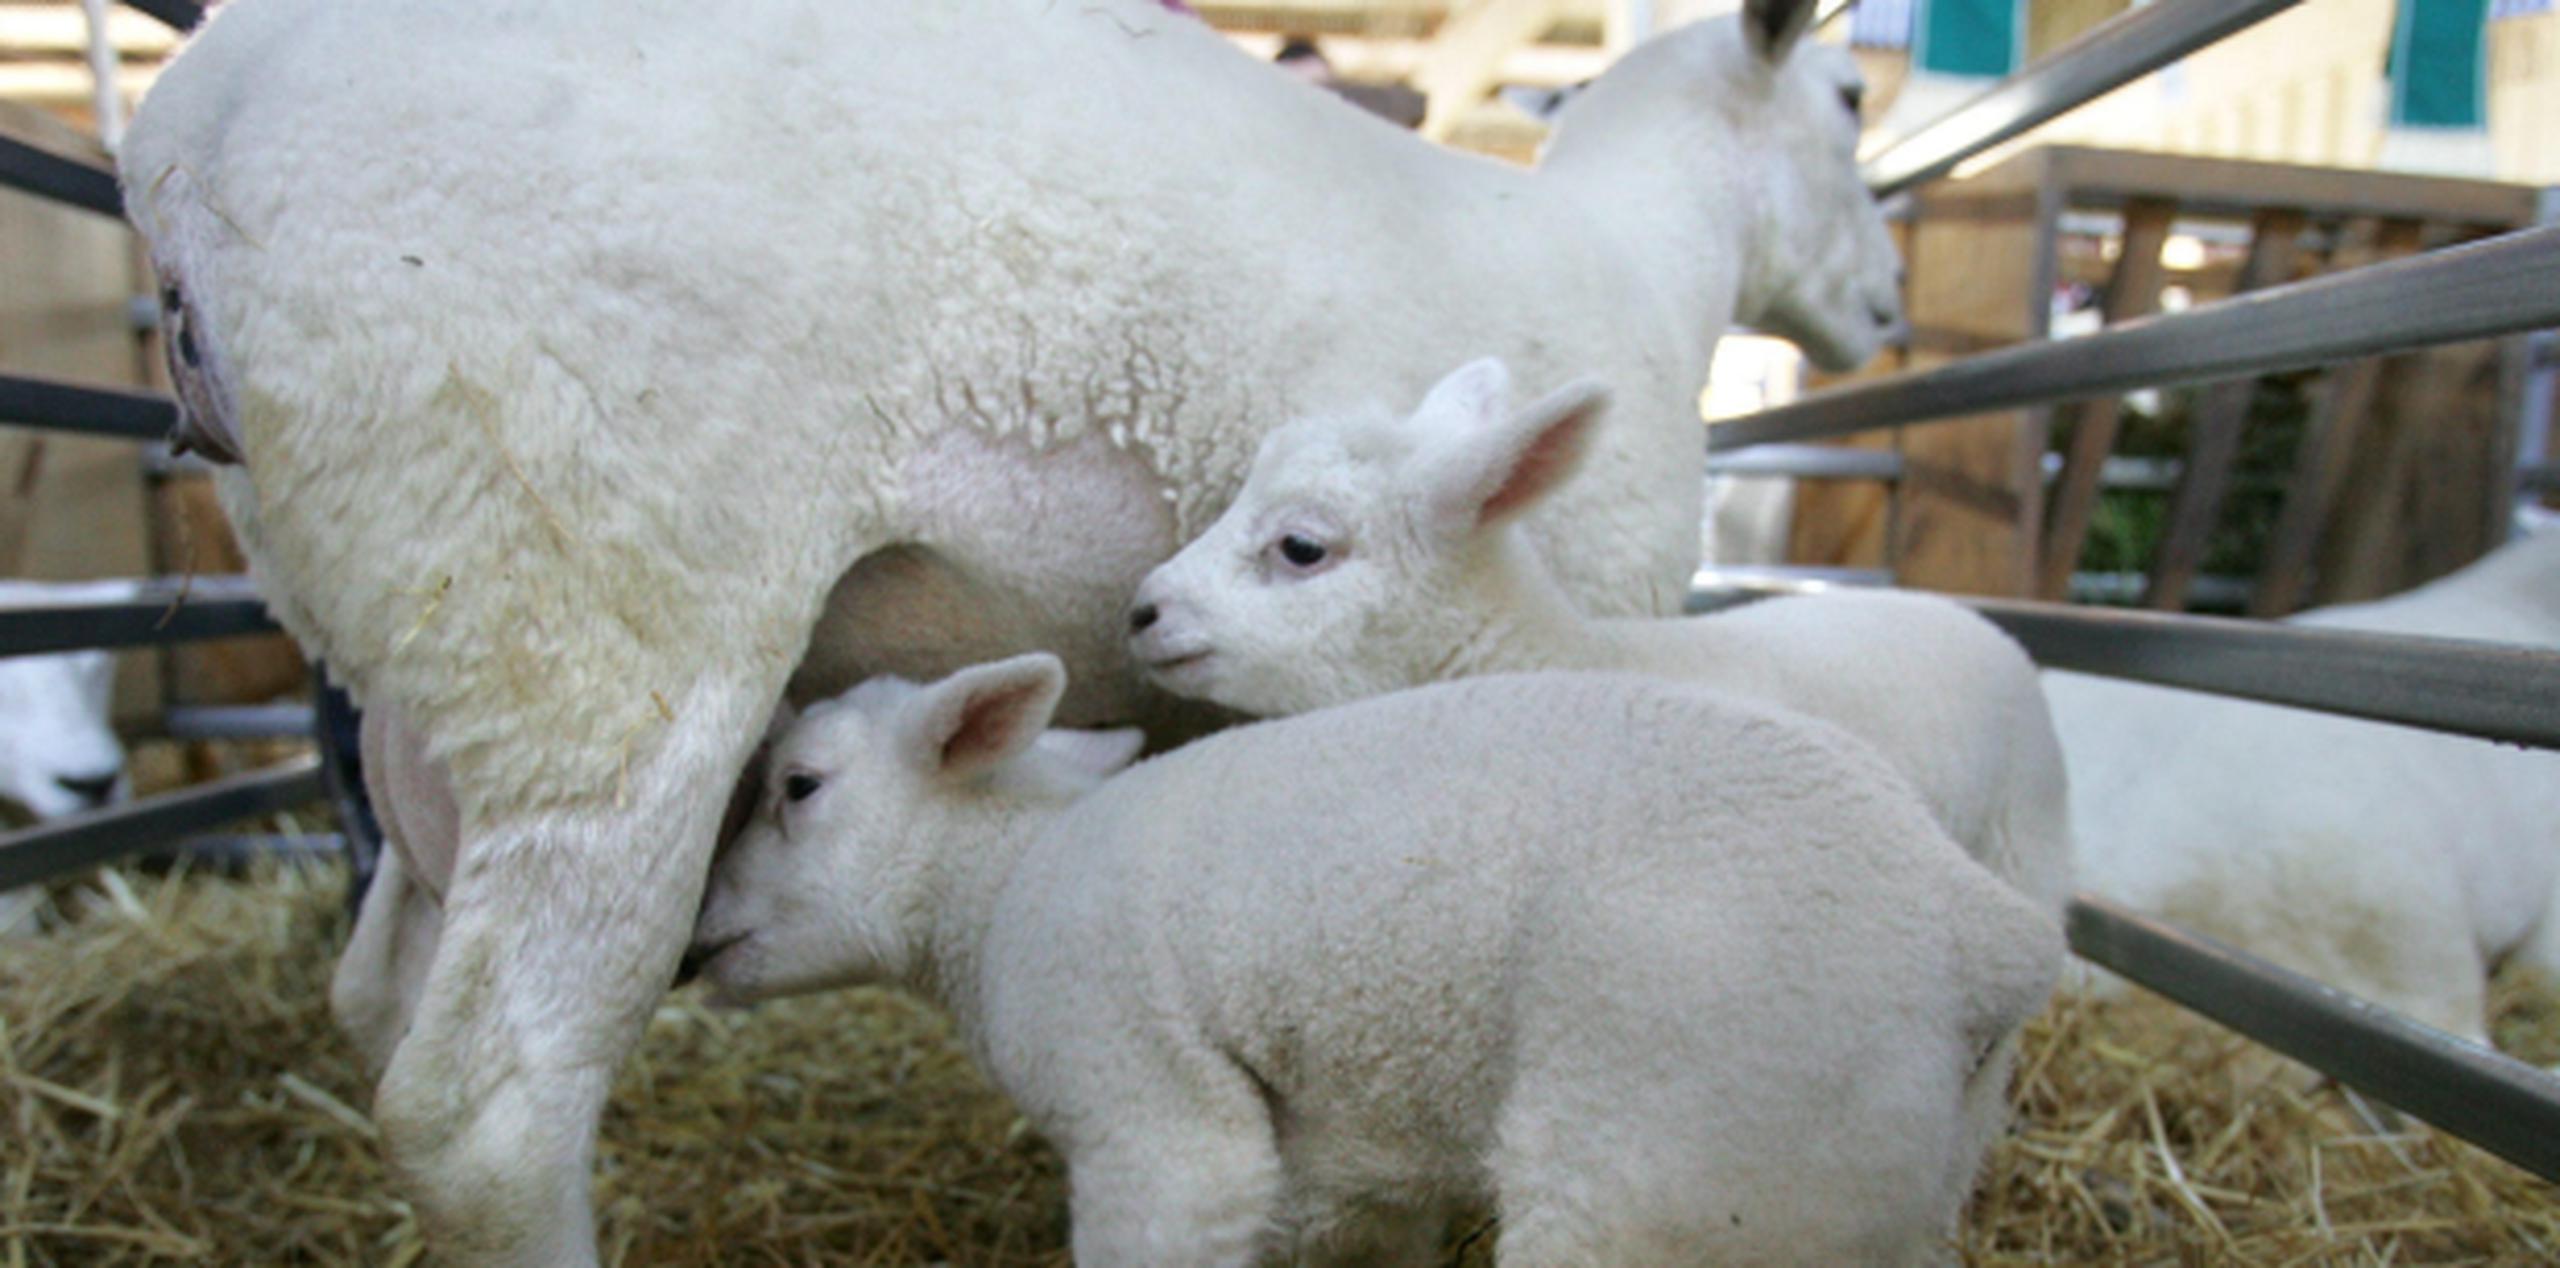 El valor de las novillas y las ovejas fue estimado en los $2,000. (Archivo)

